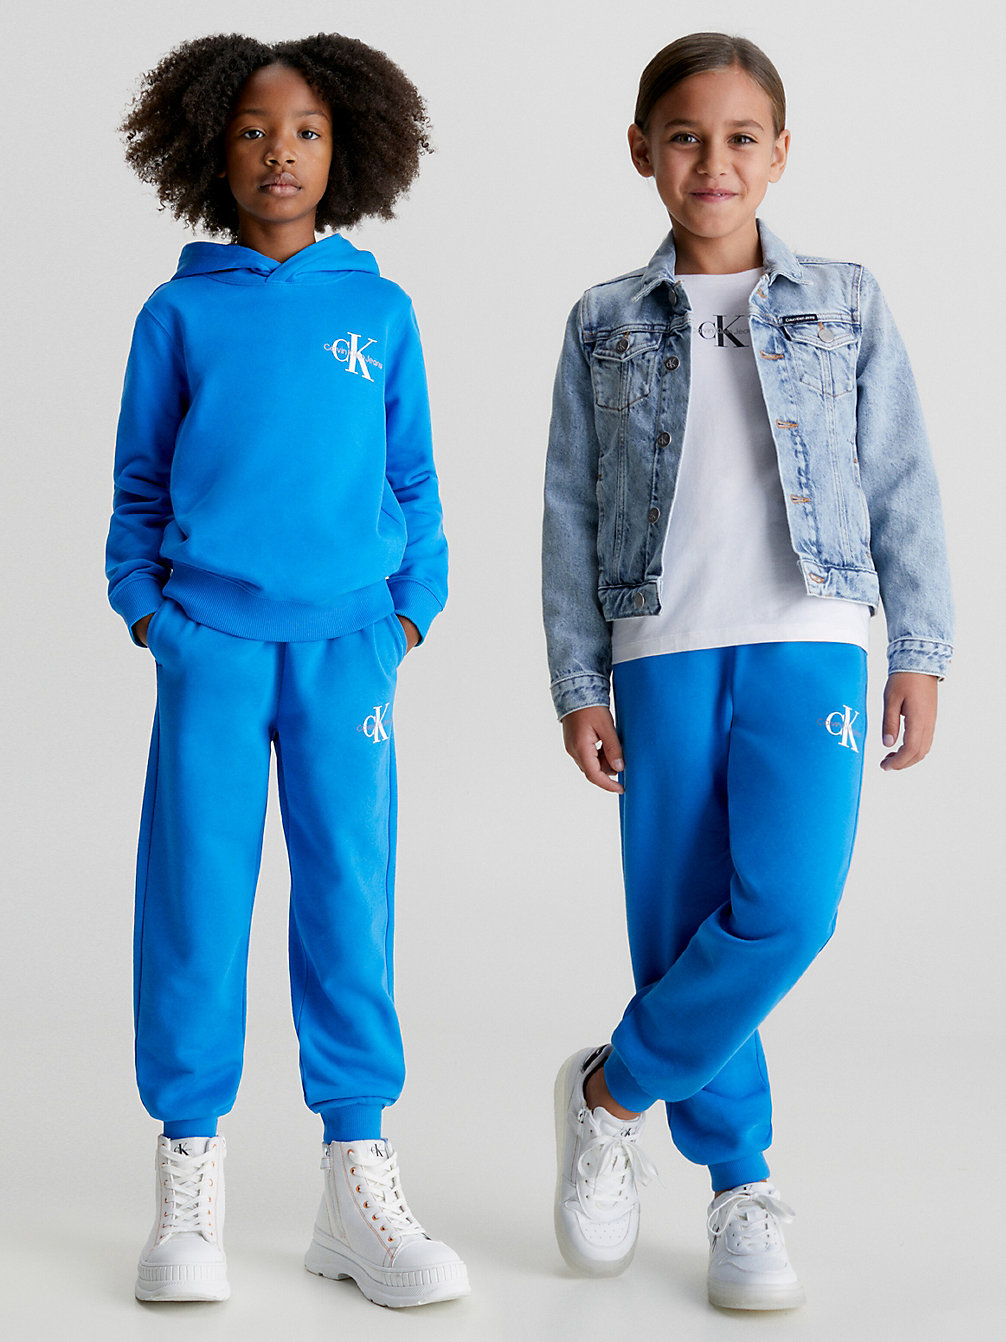 CORRIB RIVER BLUE Relaxed Joggingbroek Voor Kinderen undefined kids unisex Calvin Klein